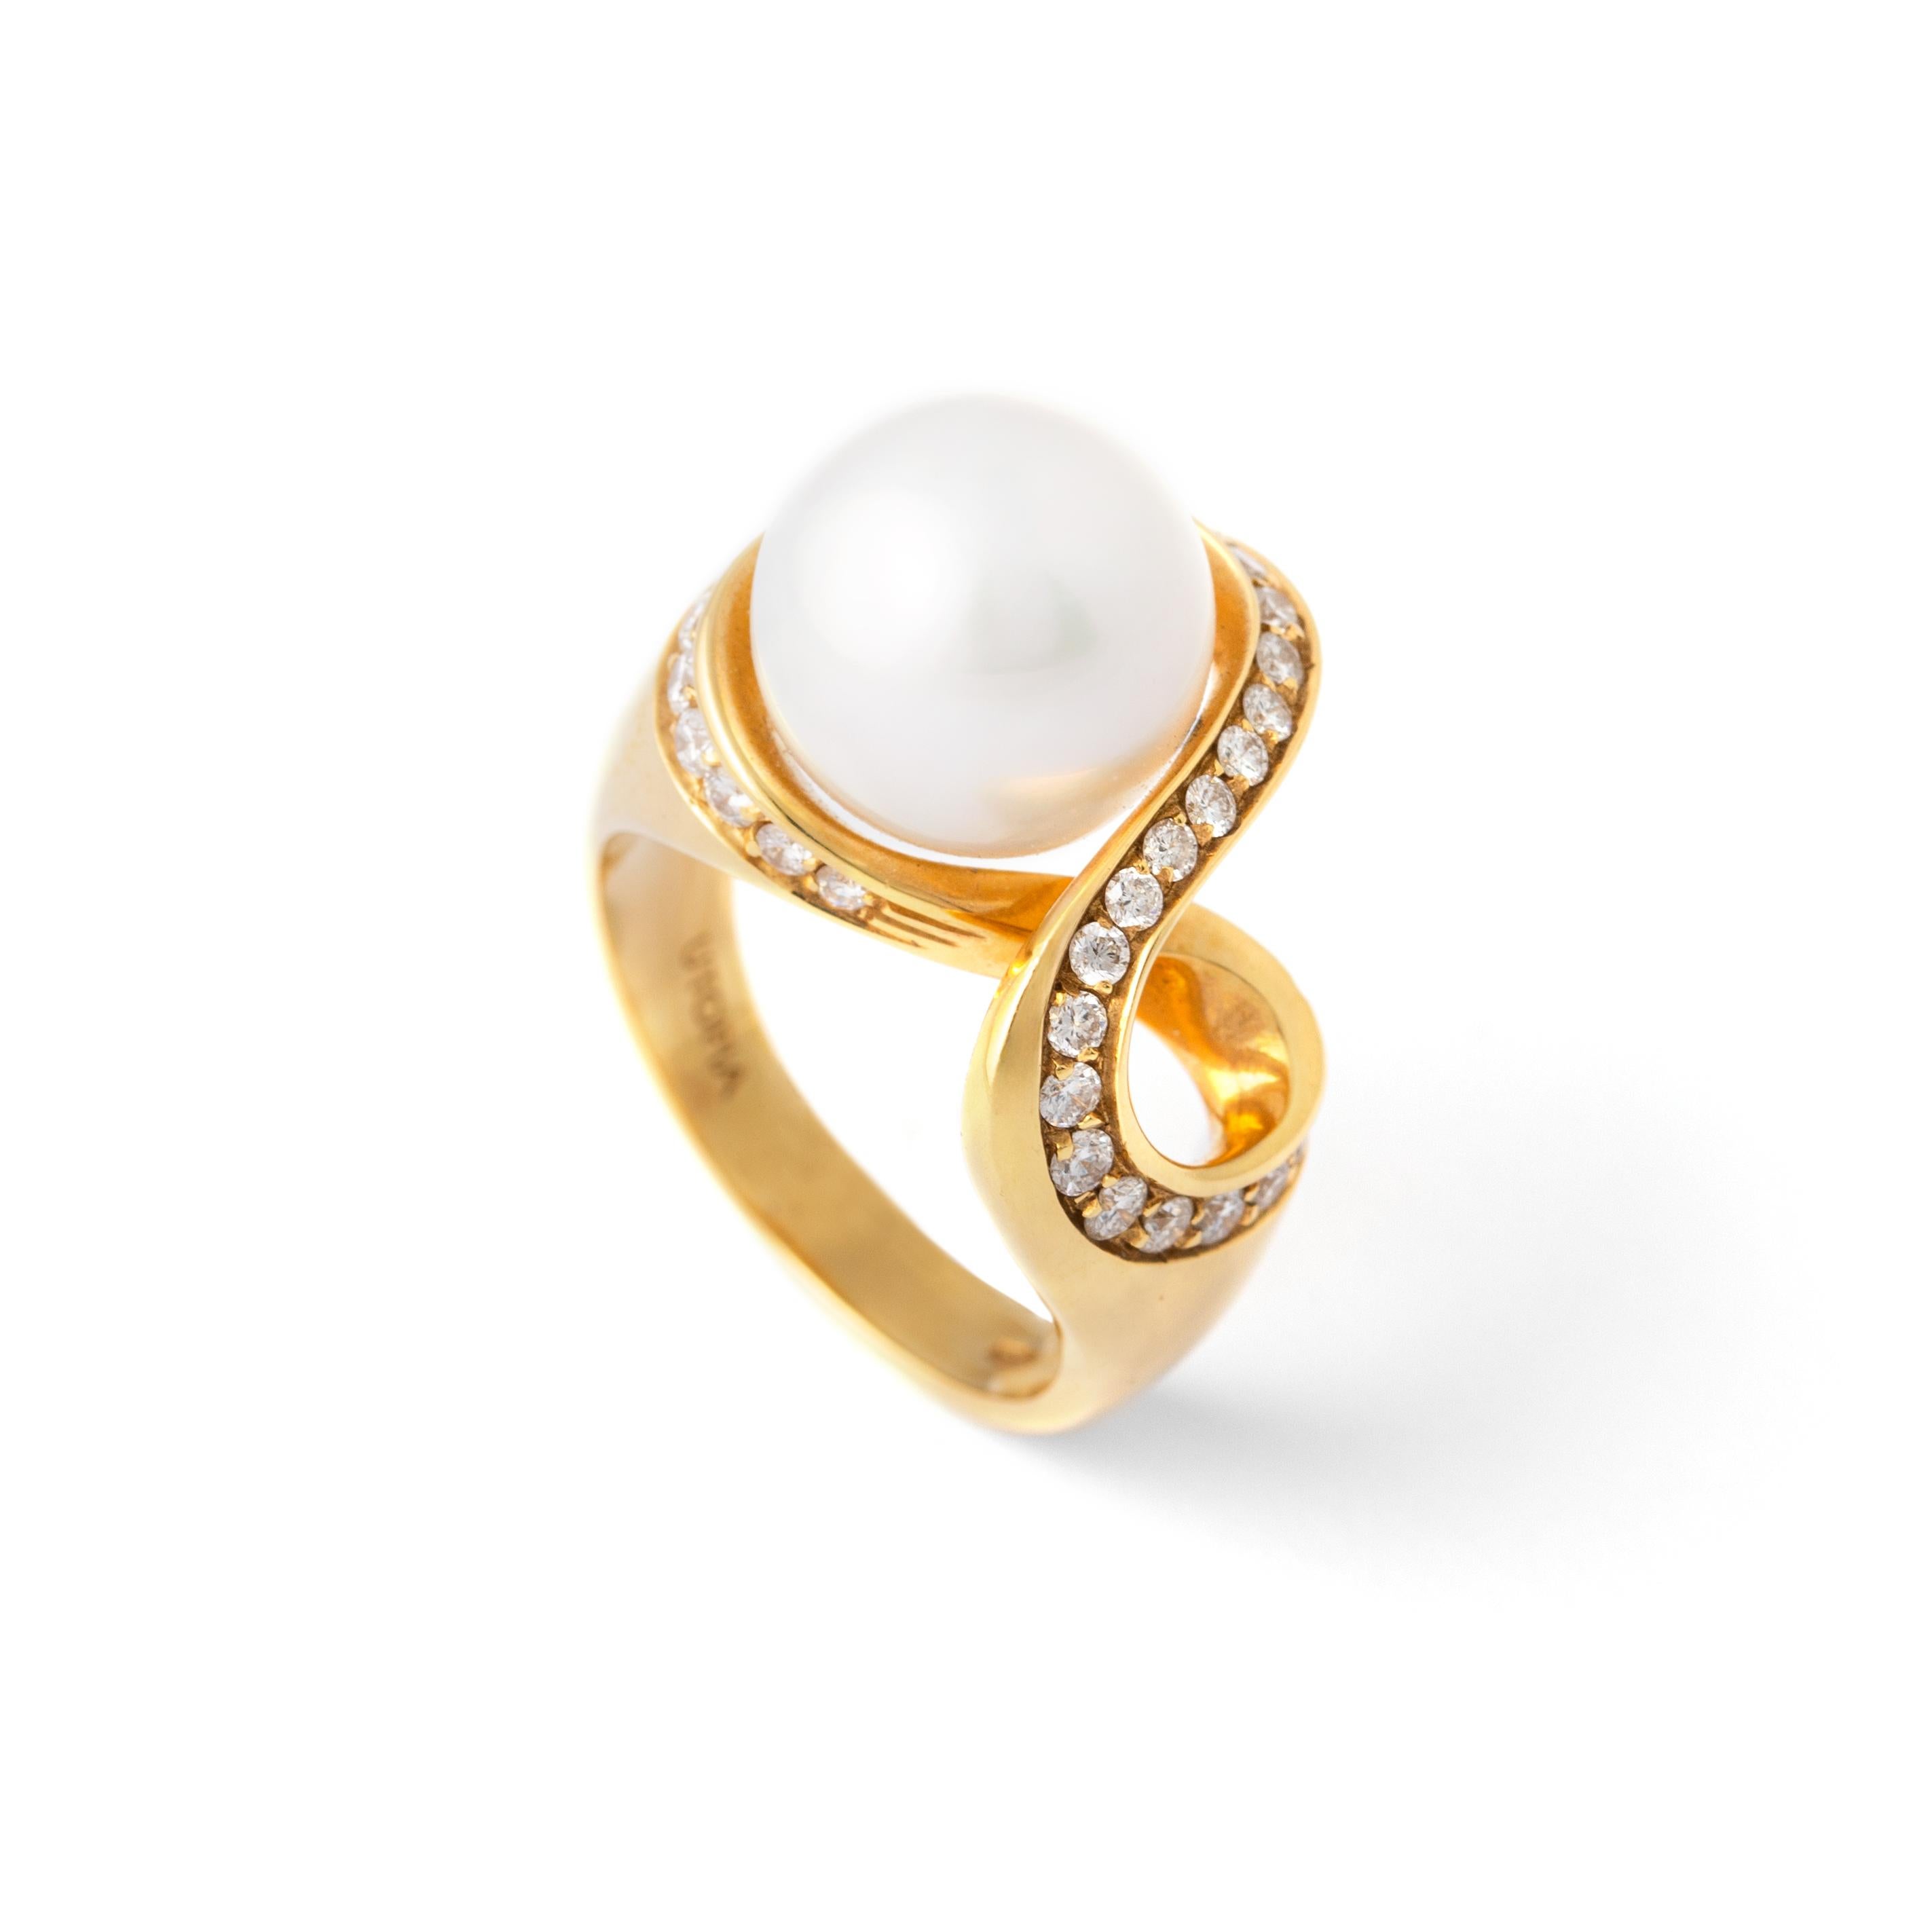 Bague en or jaune 18K avec perles et diamants.
Perle centrale de 11,35 carats et diamant estimé à 0,75 carat de couleur H et de pureté Vs.
Poids total : 13,51 grammes.
Taille : 7.5 
